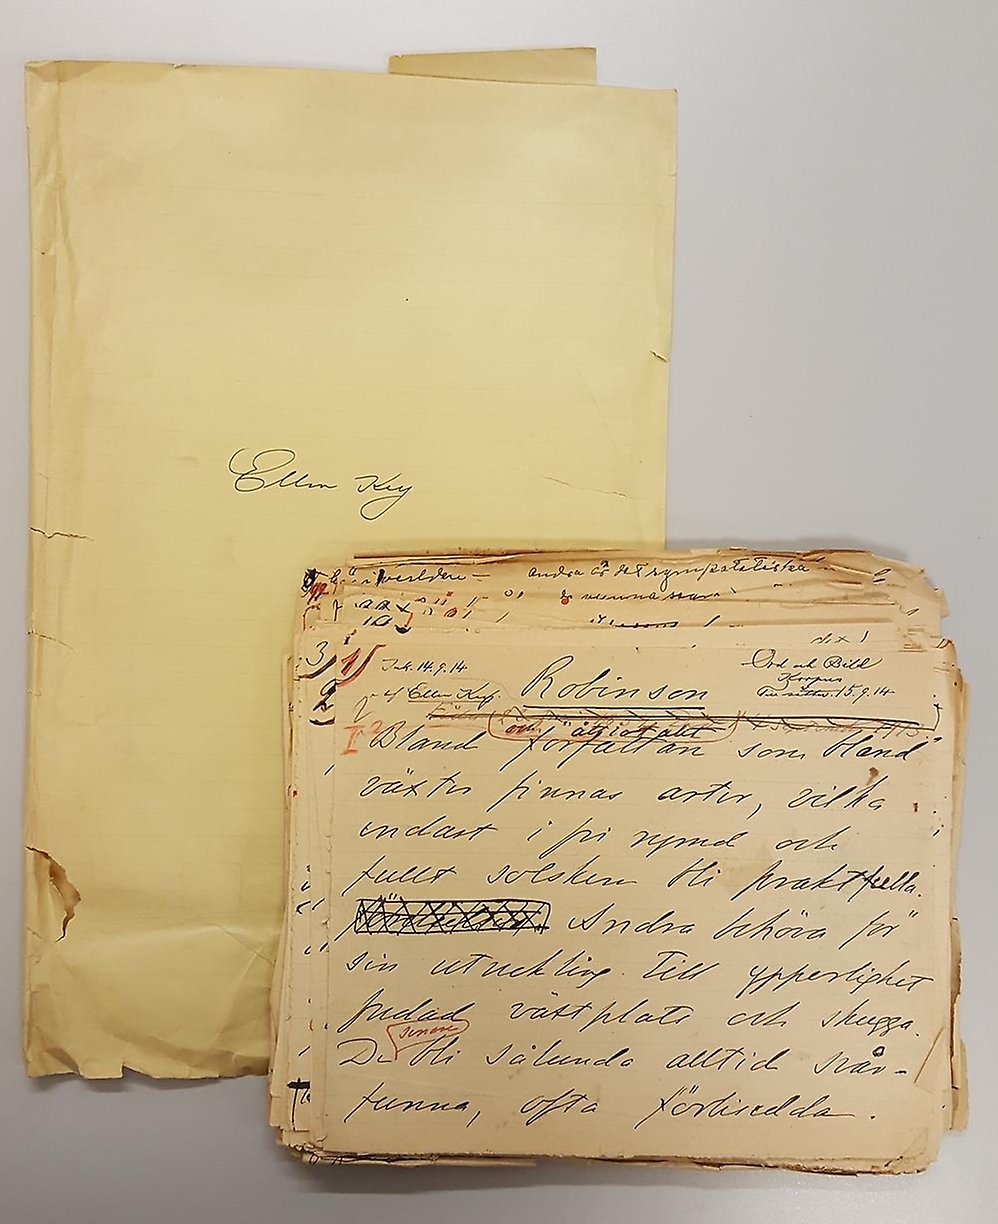 En bunt gulnade papper med handskriven text i bläck av Ellen Key.